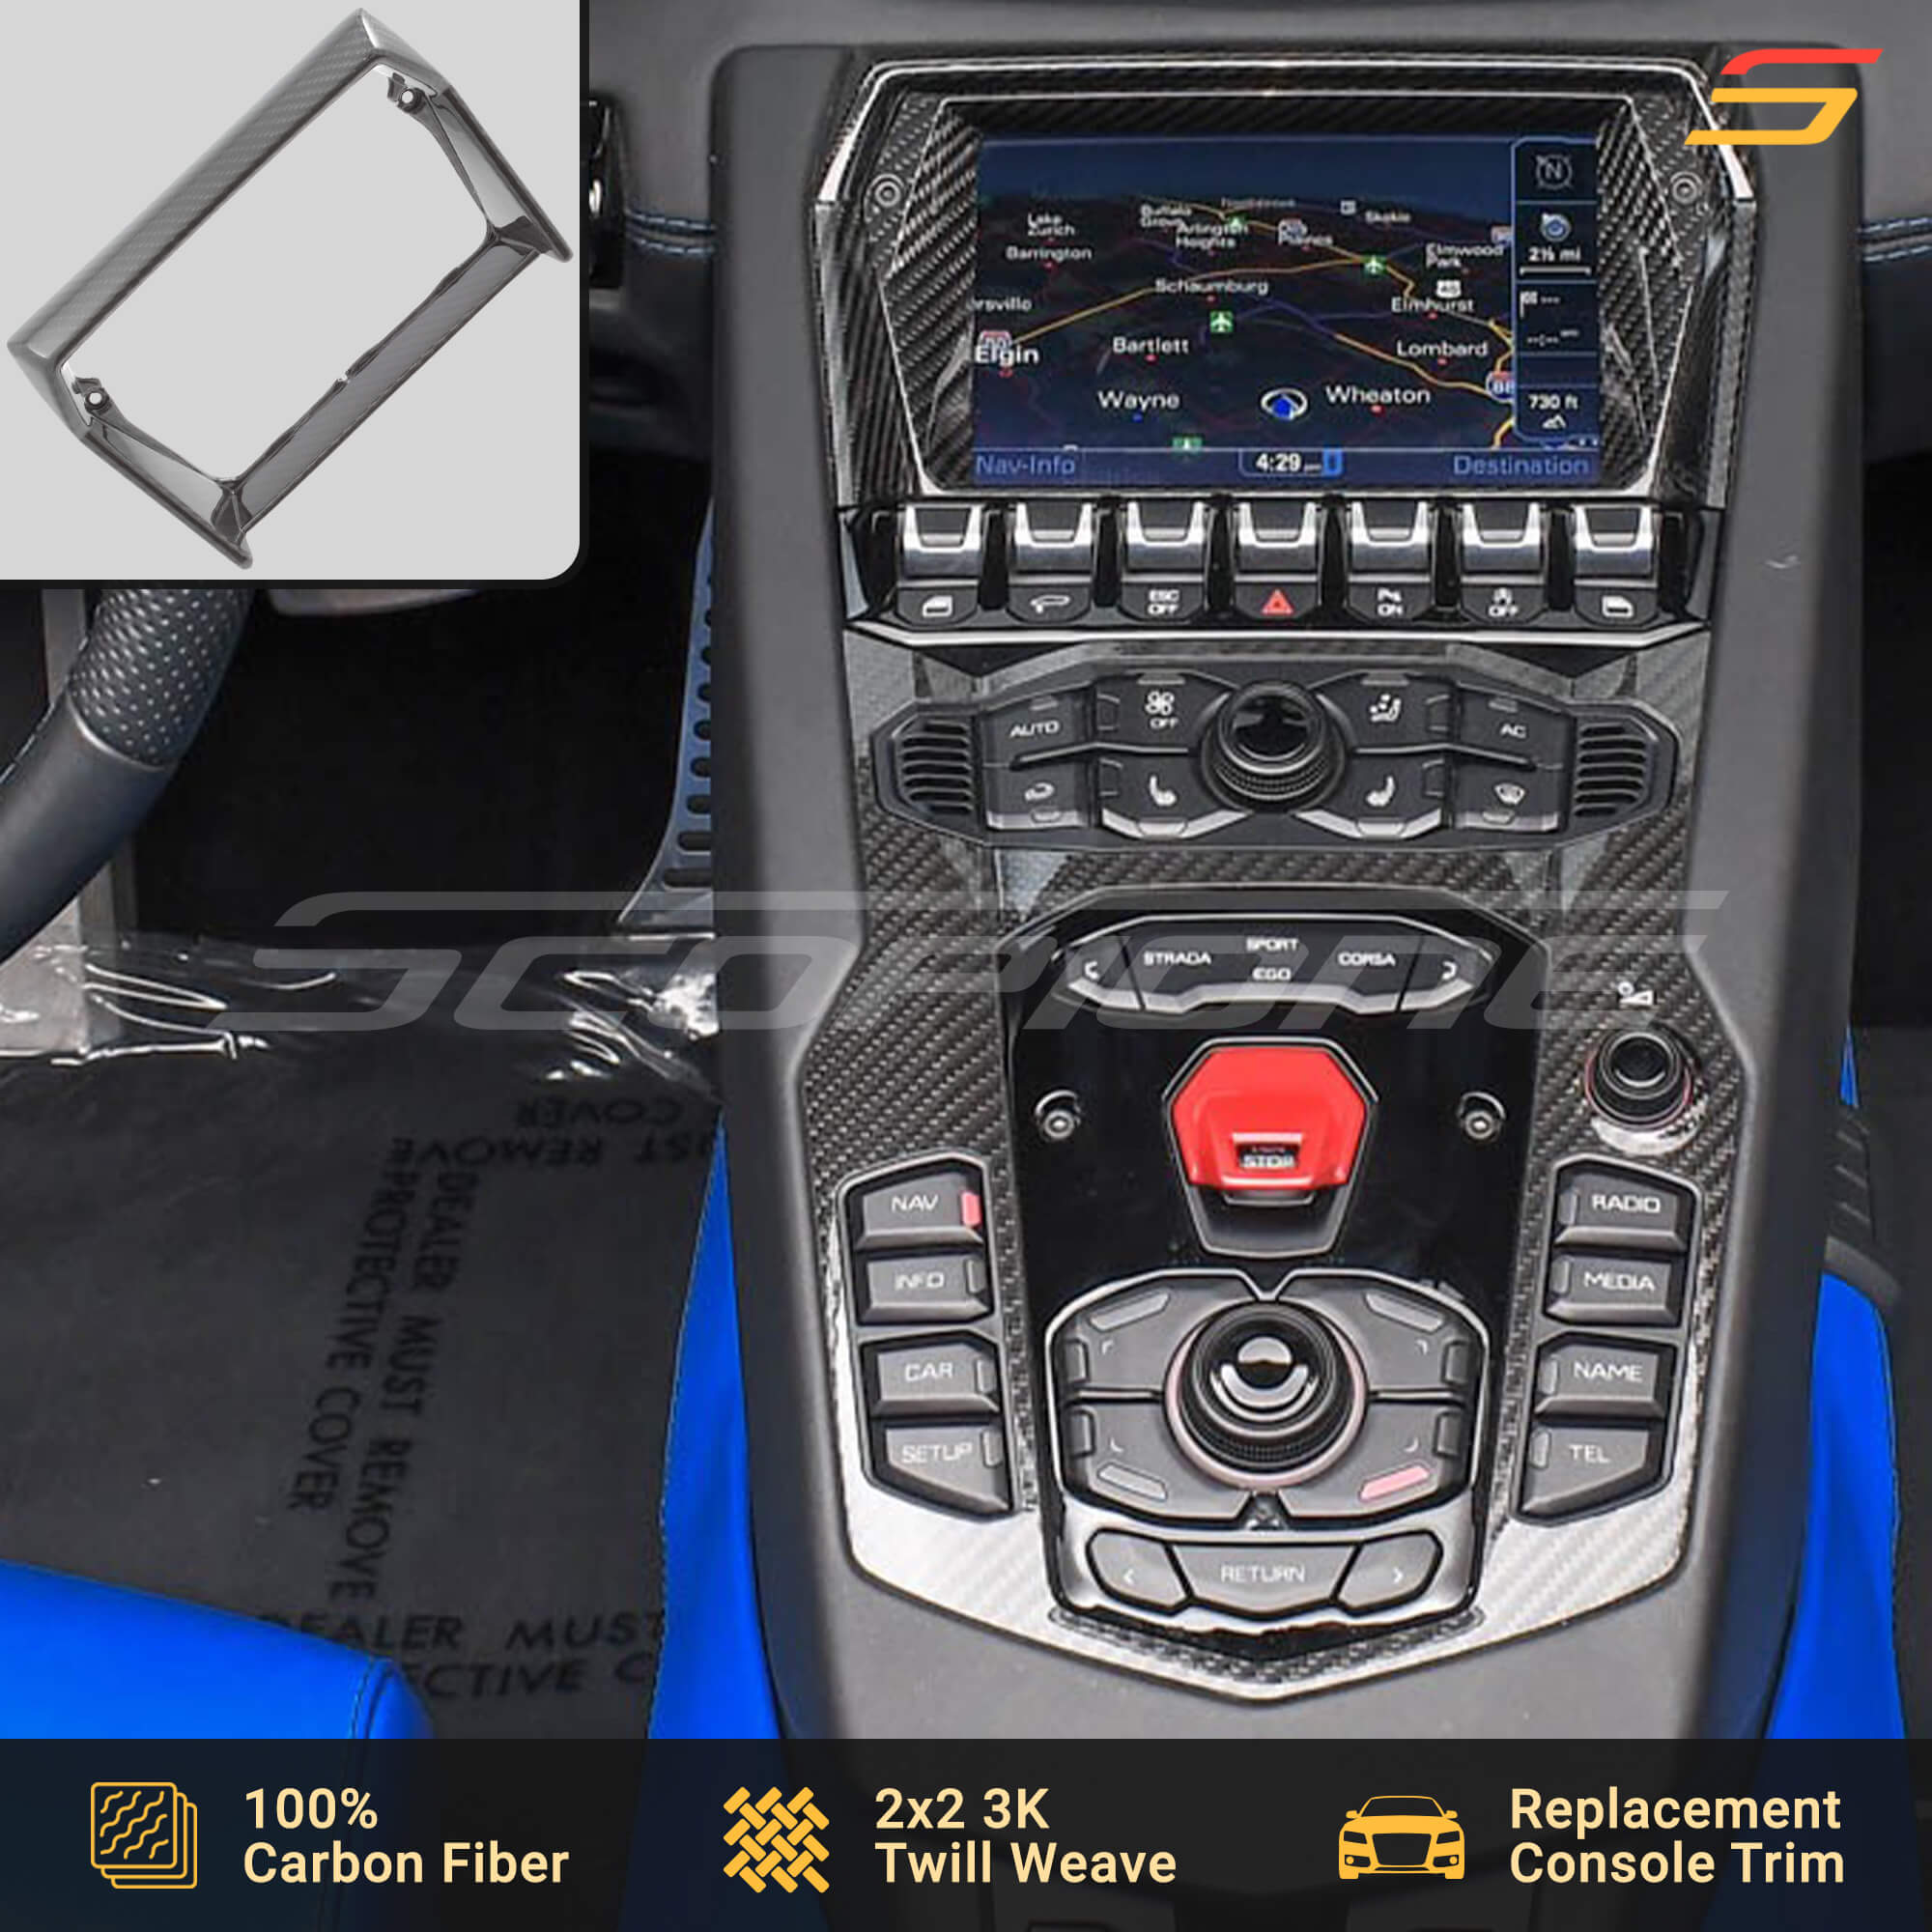 Scopione Carbon Fiber Center Screen Outer Cover for Aventador